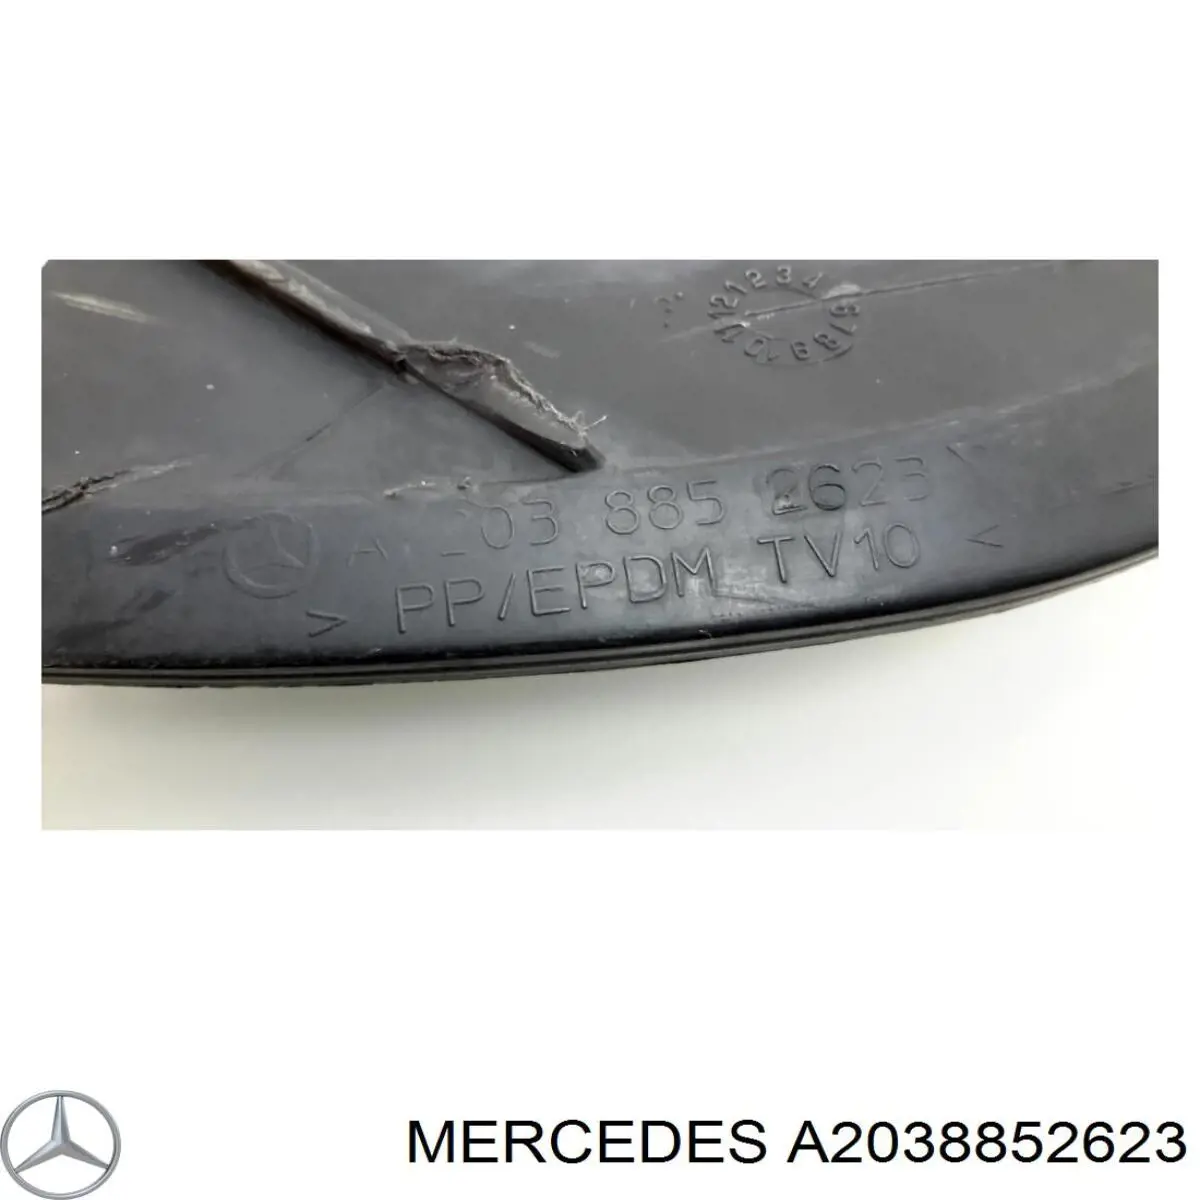 A2038852623 Mercedes rejilla de ventilación, parachoques trasero, central